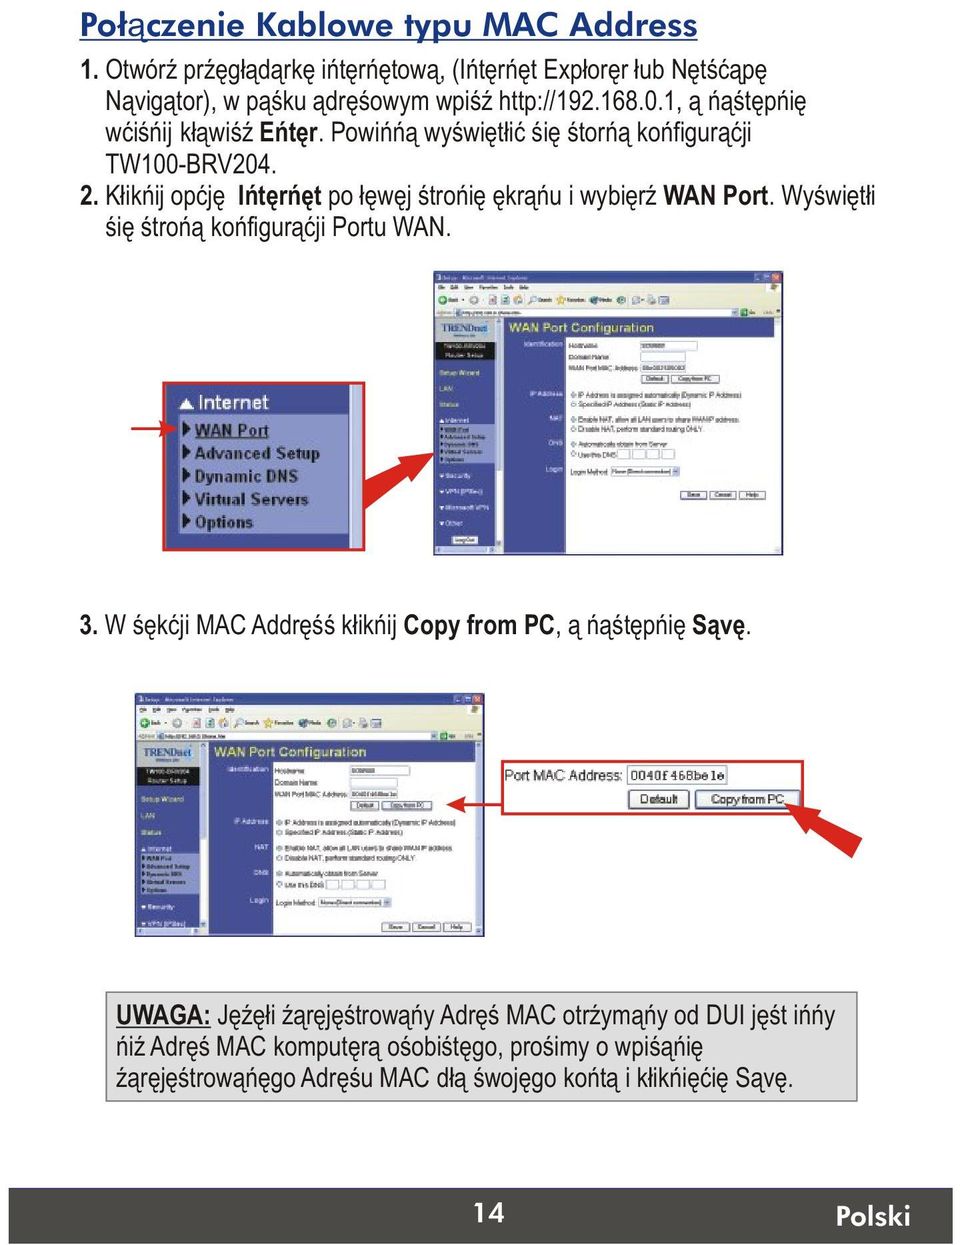 Kliknij opcje Internet po lewej stronie ekranu i wybierz WAN Port. Wyswietli sie strona konfiguracji Portu WAN. 3.